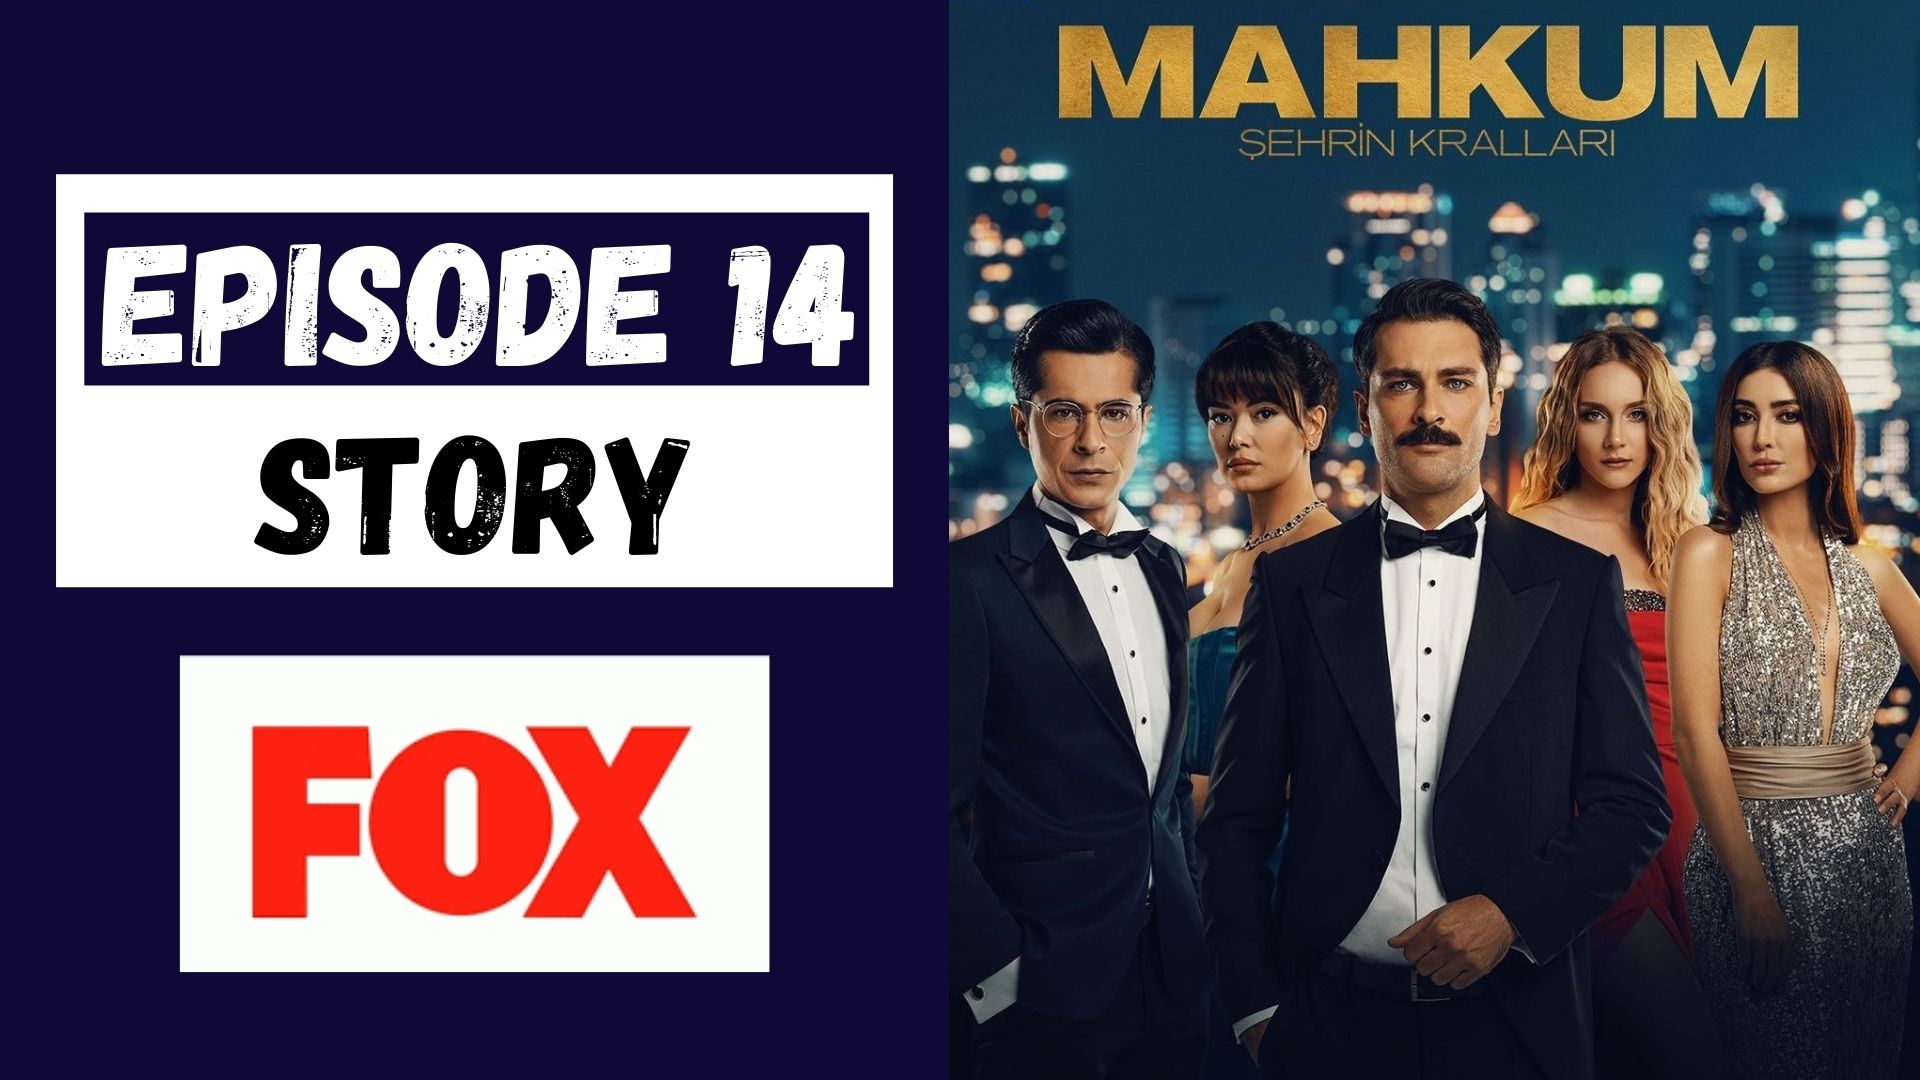 Mahkum Episode 14 Story